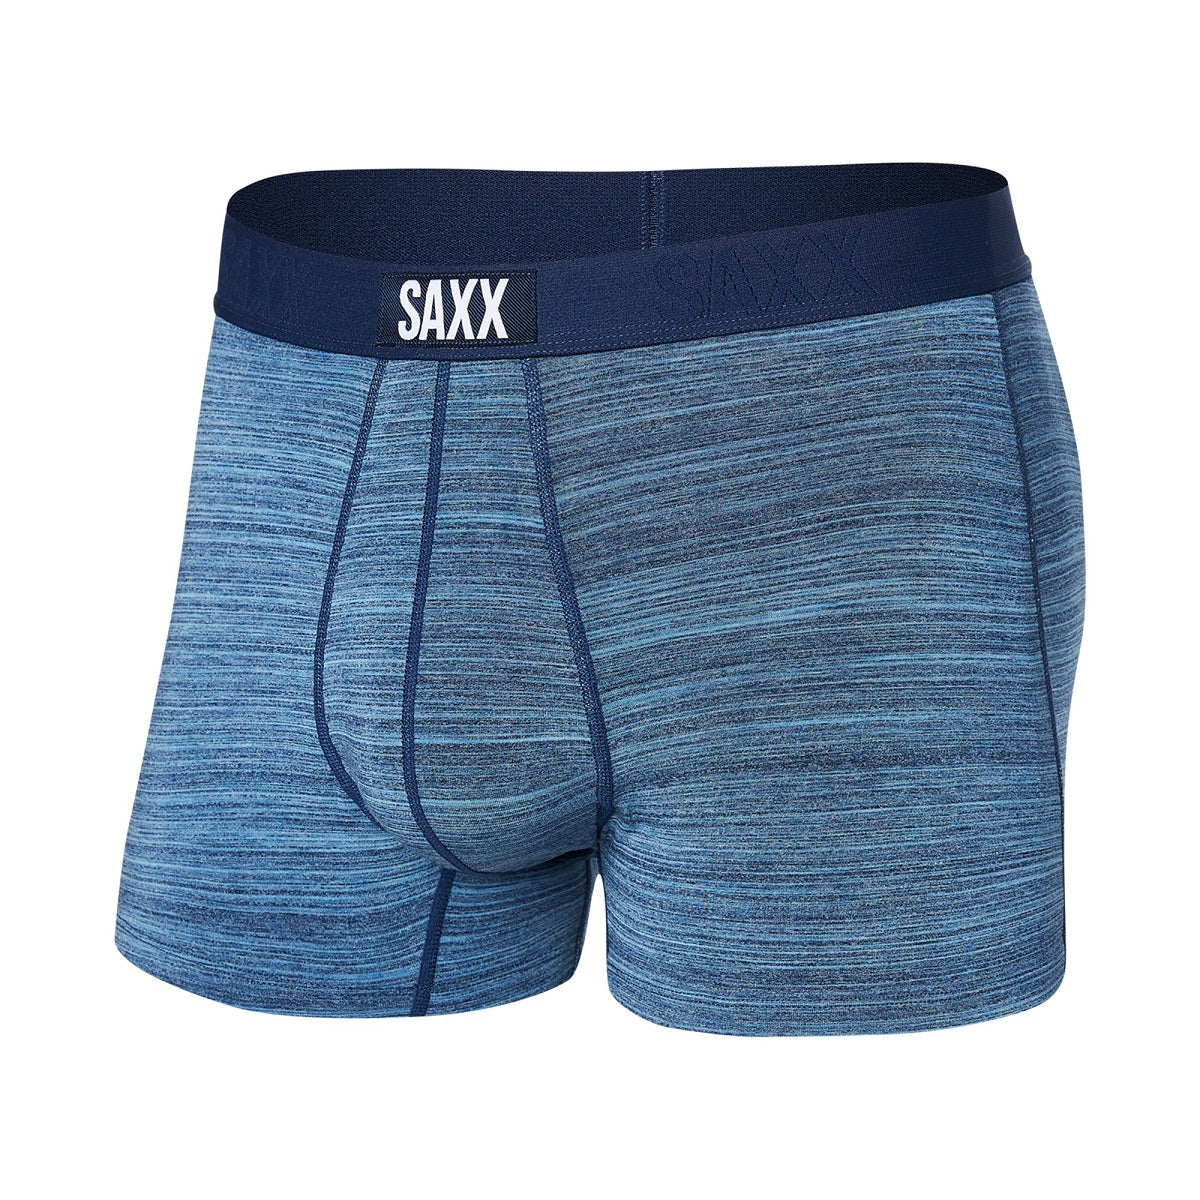 Saxx Underwear Review - Cloth Karma